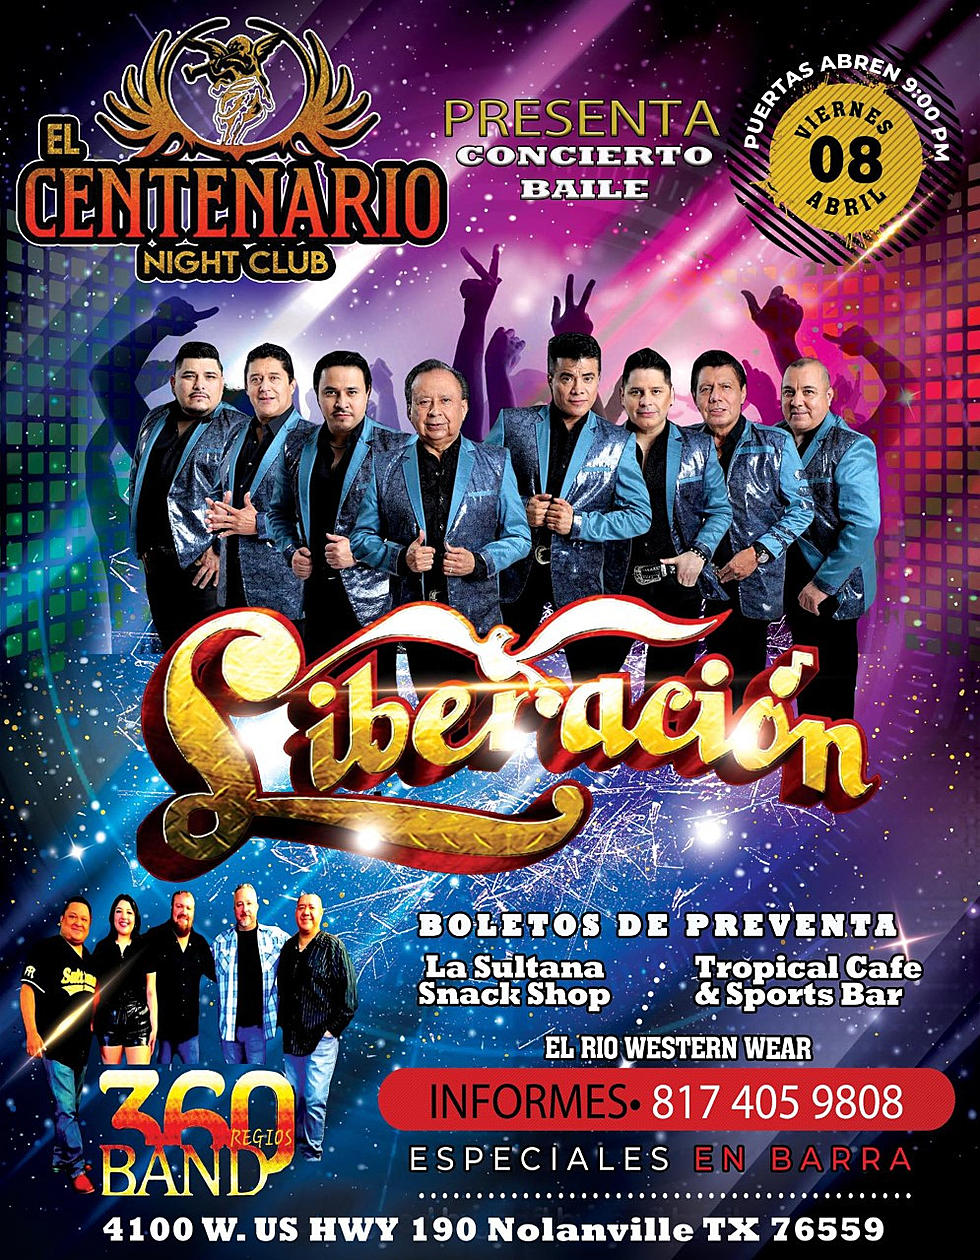 El Centenario Night Club Presenta “LIBERACIÓN “